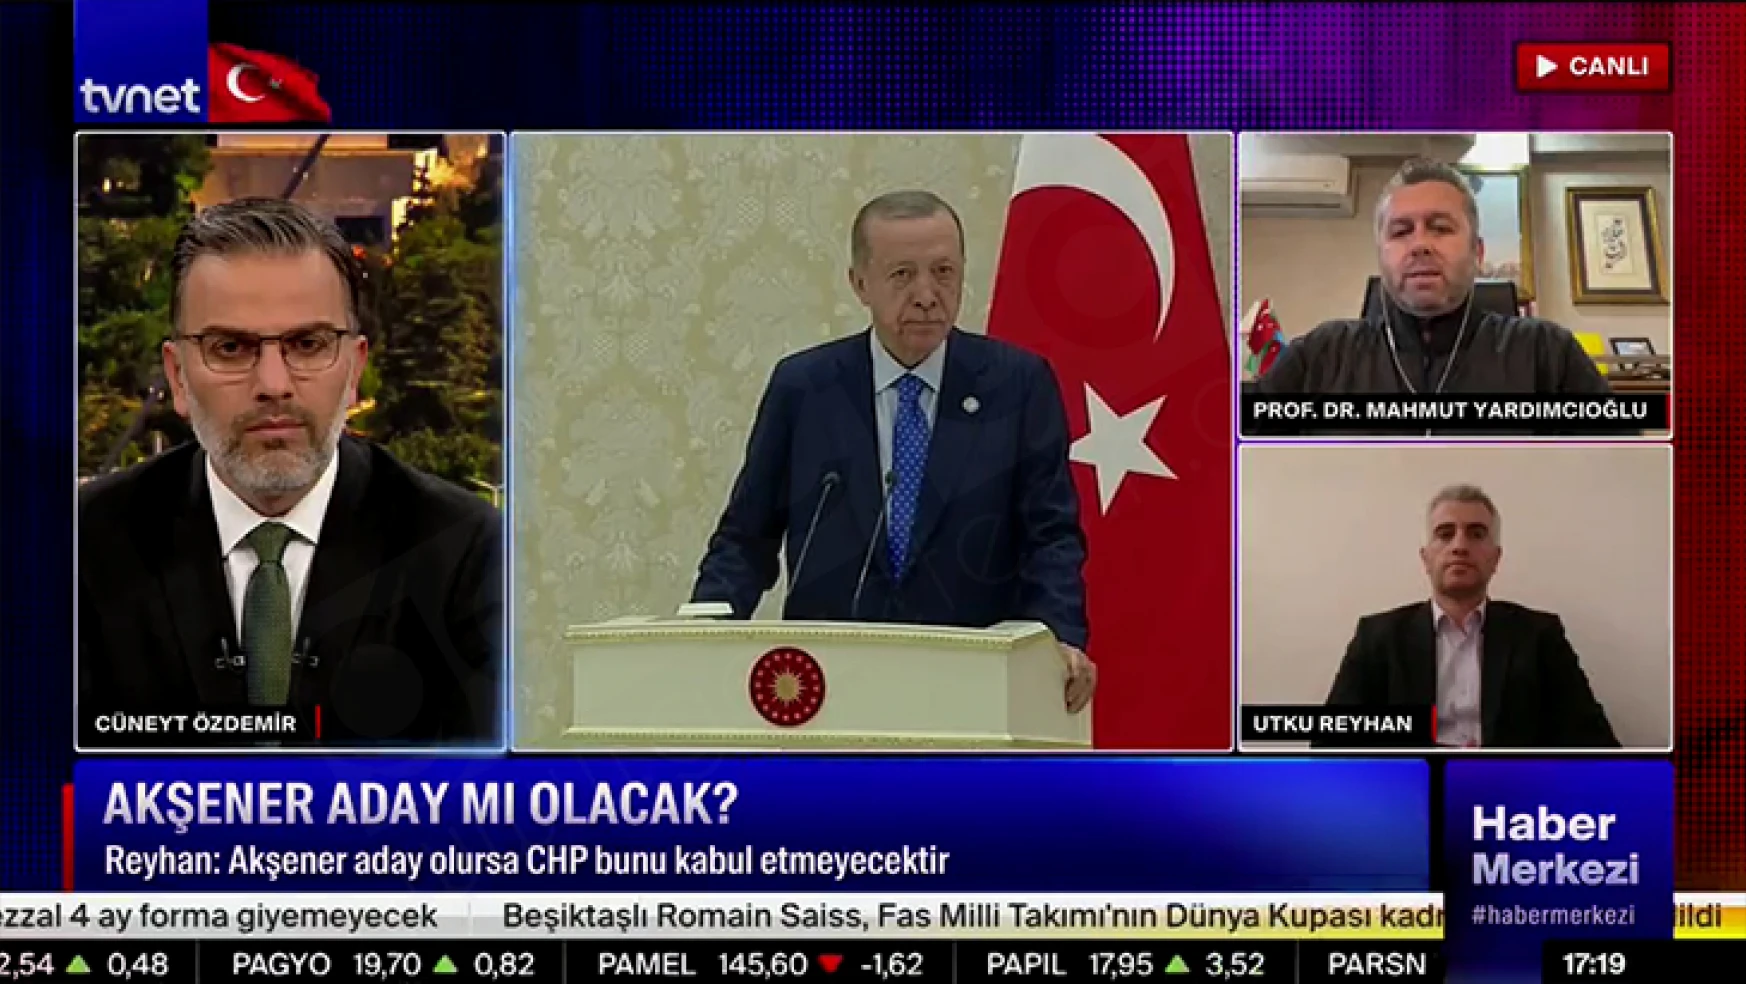 Yardımcıoğlu: İYİ Parti, 6'lı masada yer almamalı